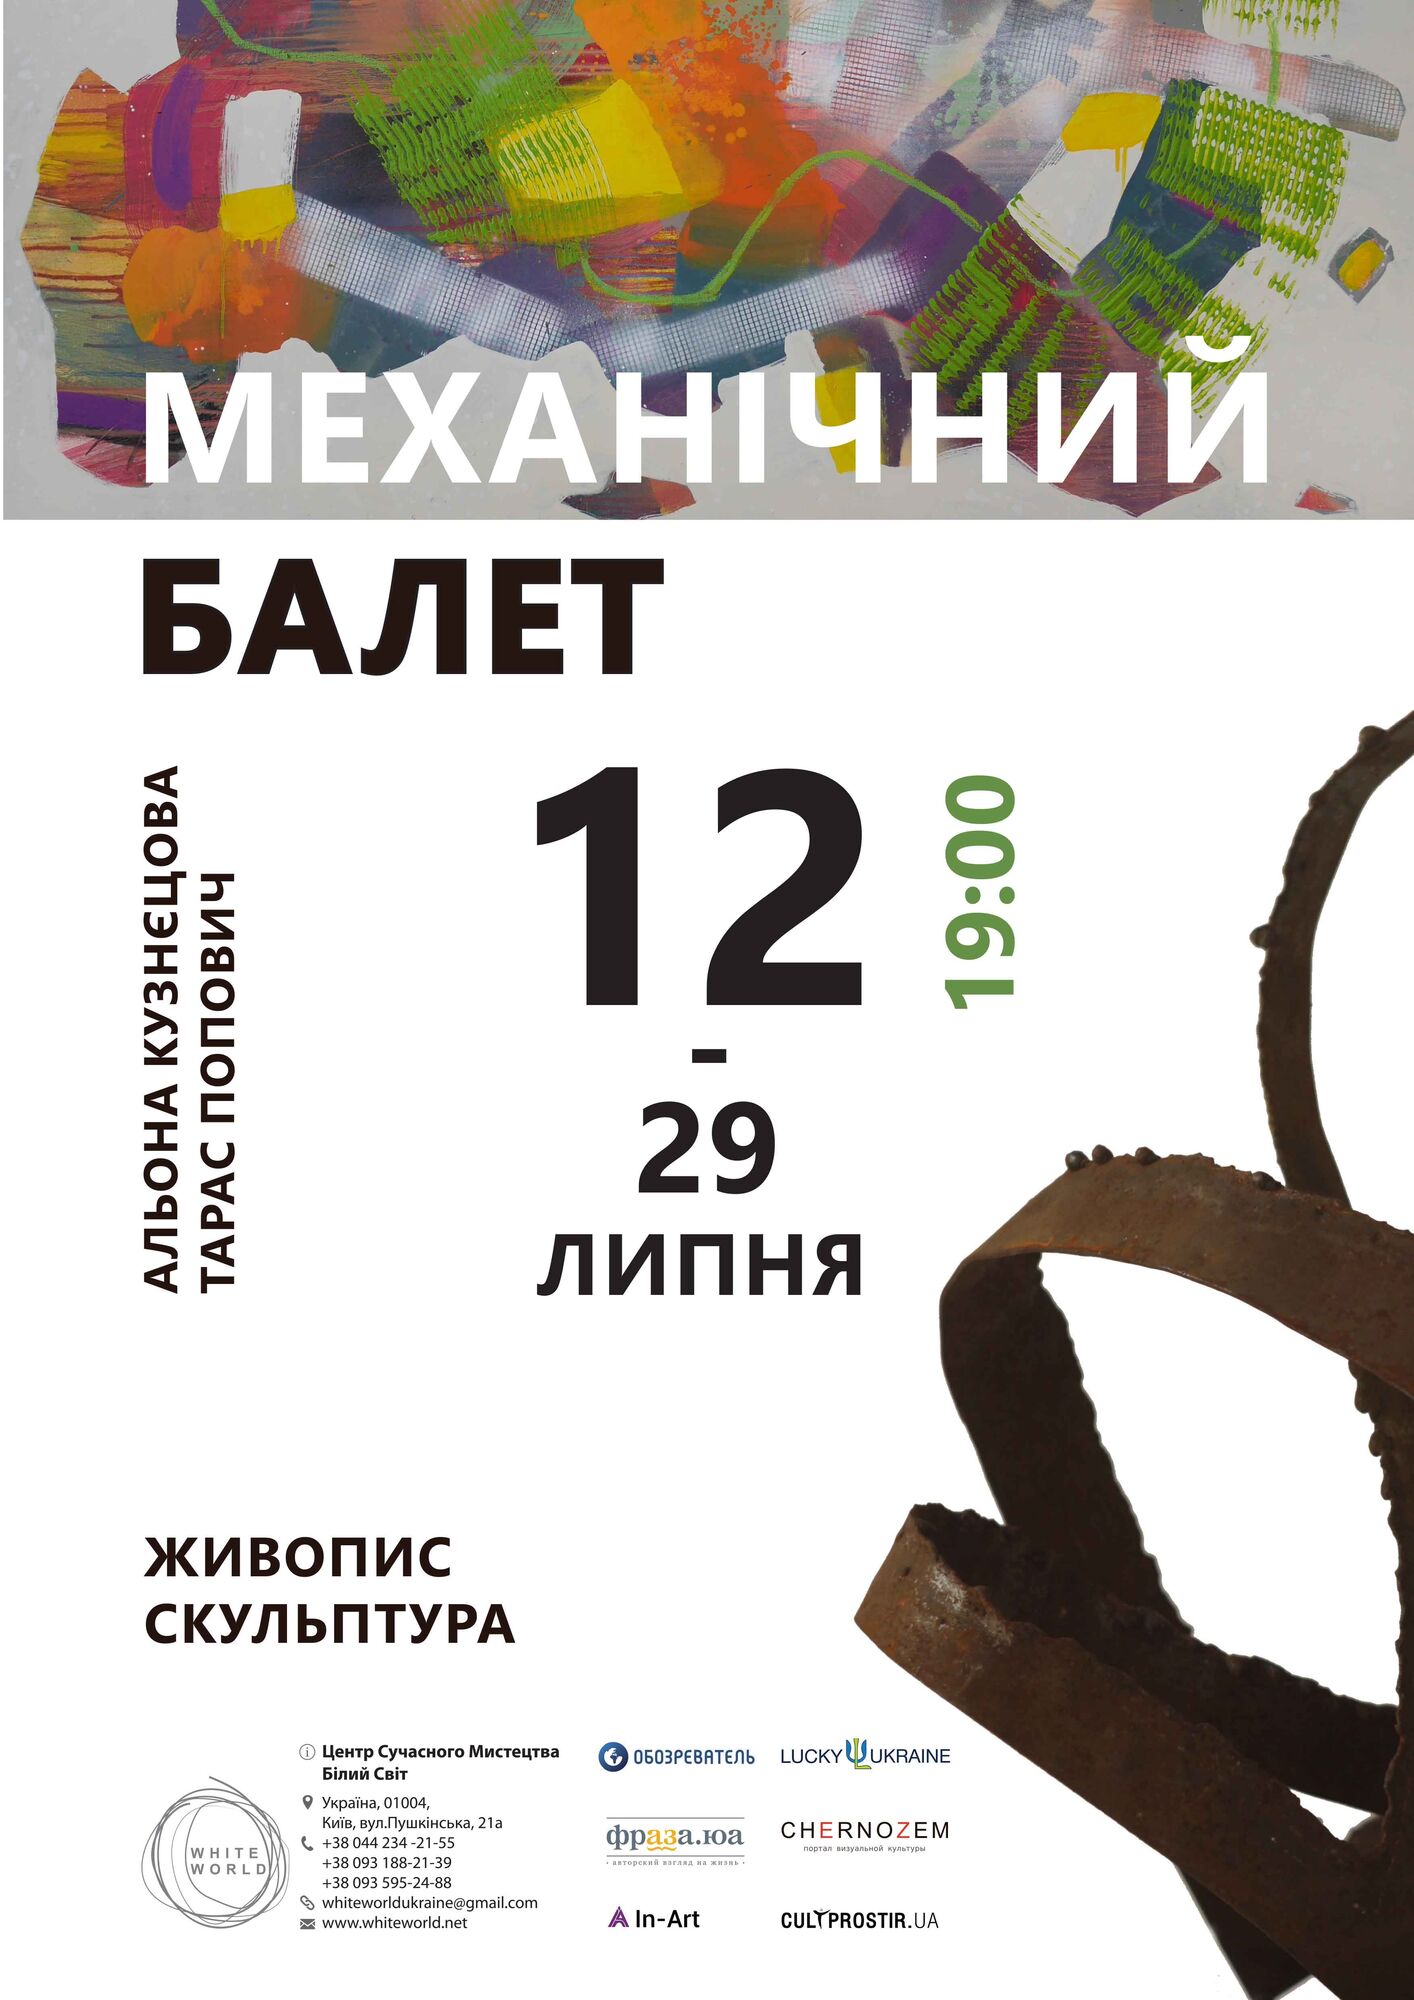 В Киеве состоится выставка "Механический балет" от Алены Кузнецовой и Тараса Поповича